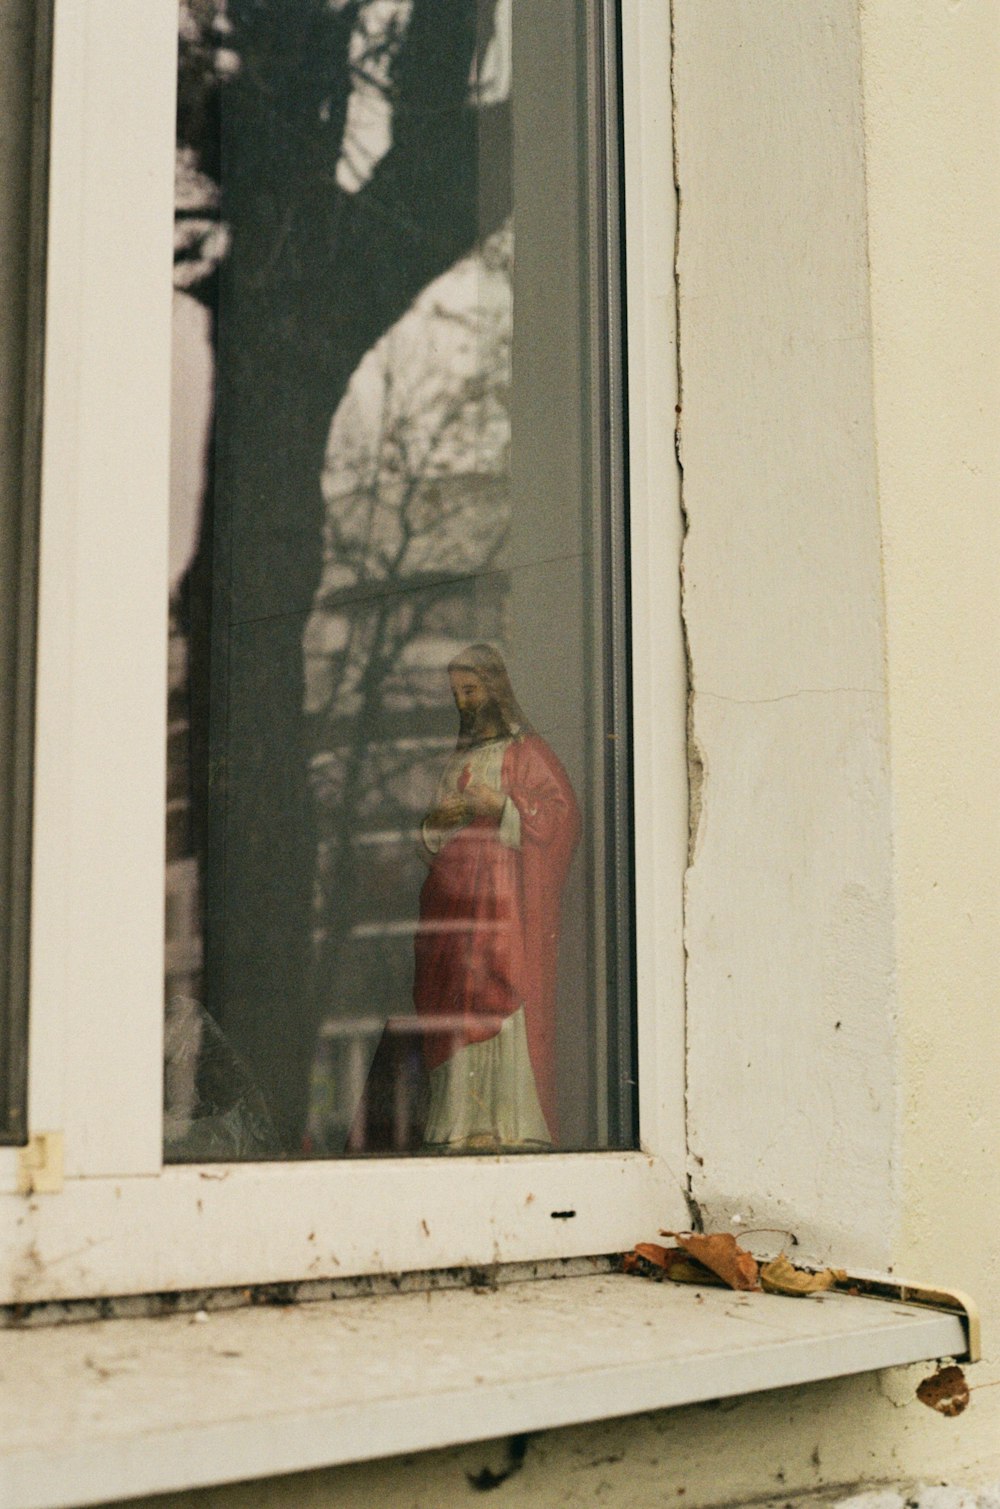 Una statua di una persona con un cappotto rosso è vista attraverso una finestra